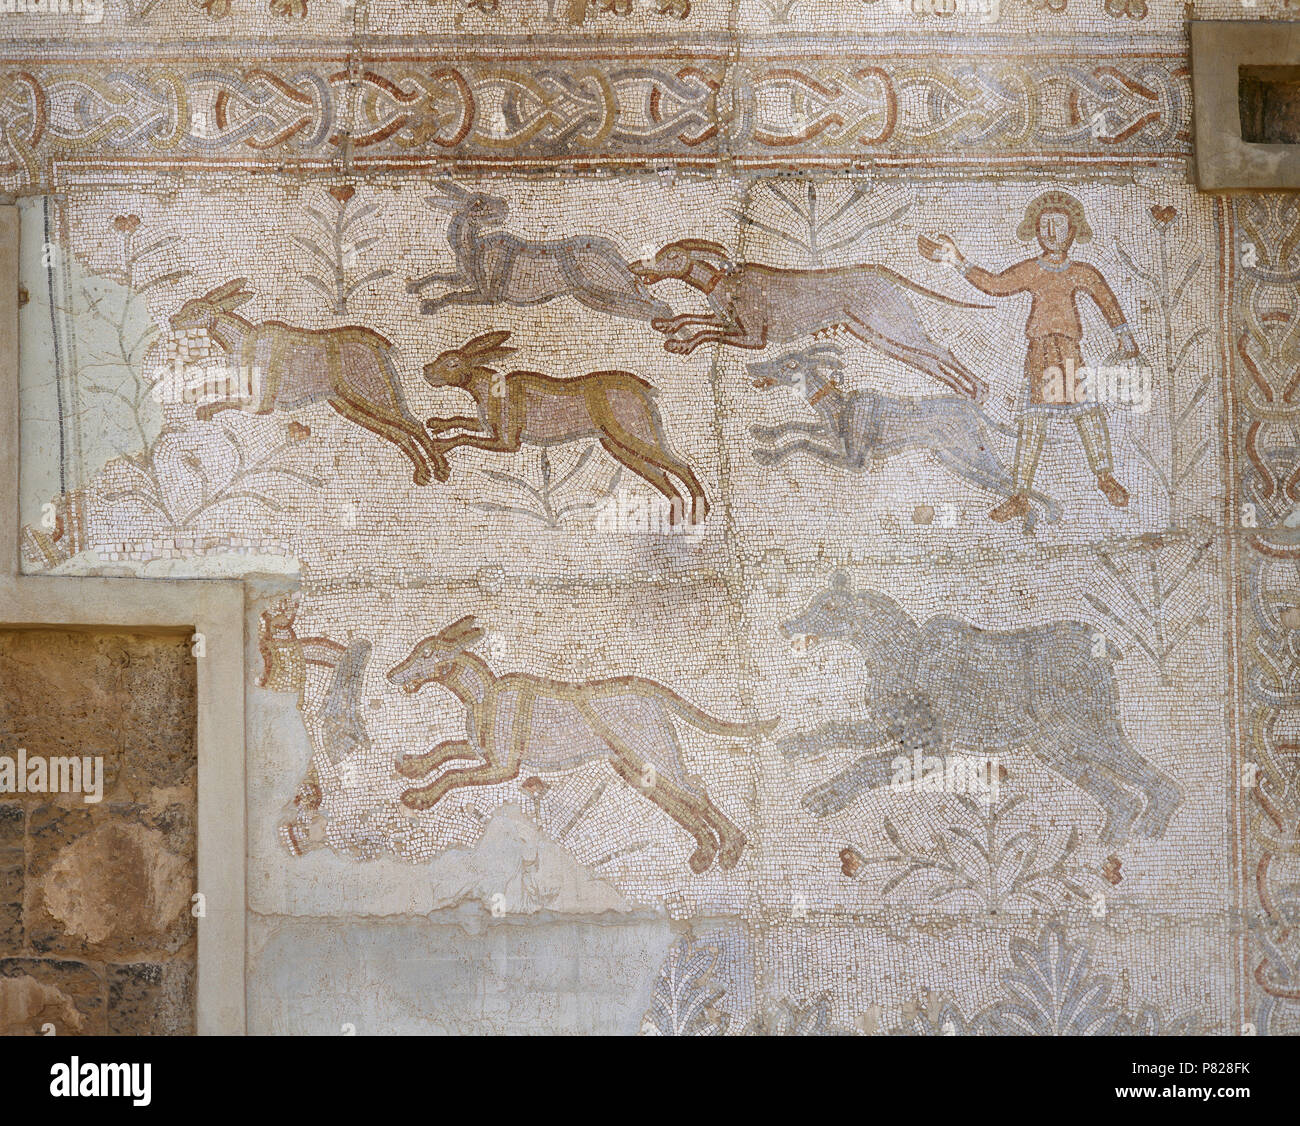 La Syrie. Bosra (Busra al-sham). District de Deraa. Mosaïque romaine, 6e siècle, découvert dans le théâtre. Scène de chasse chiens de chasse (lièvre). Banque D'Images